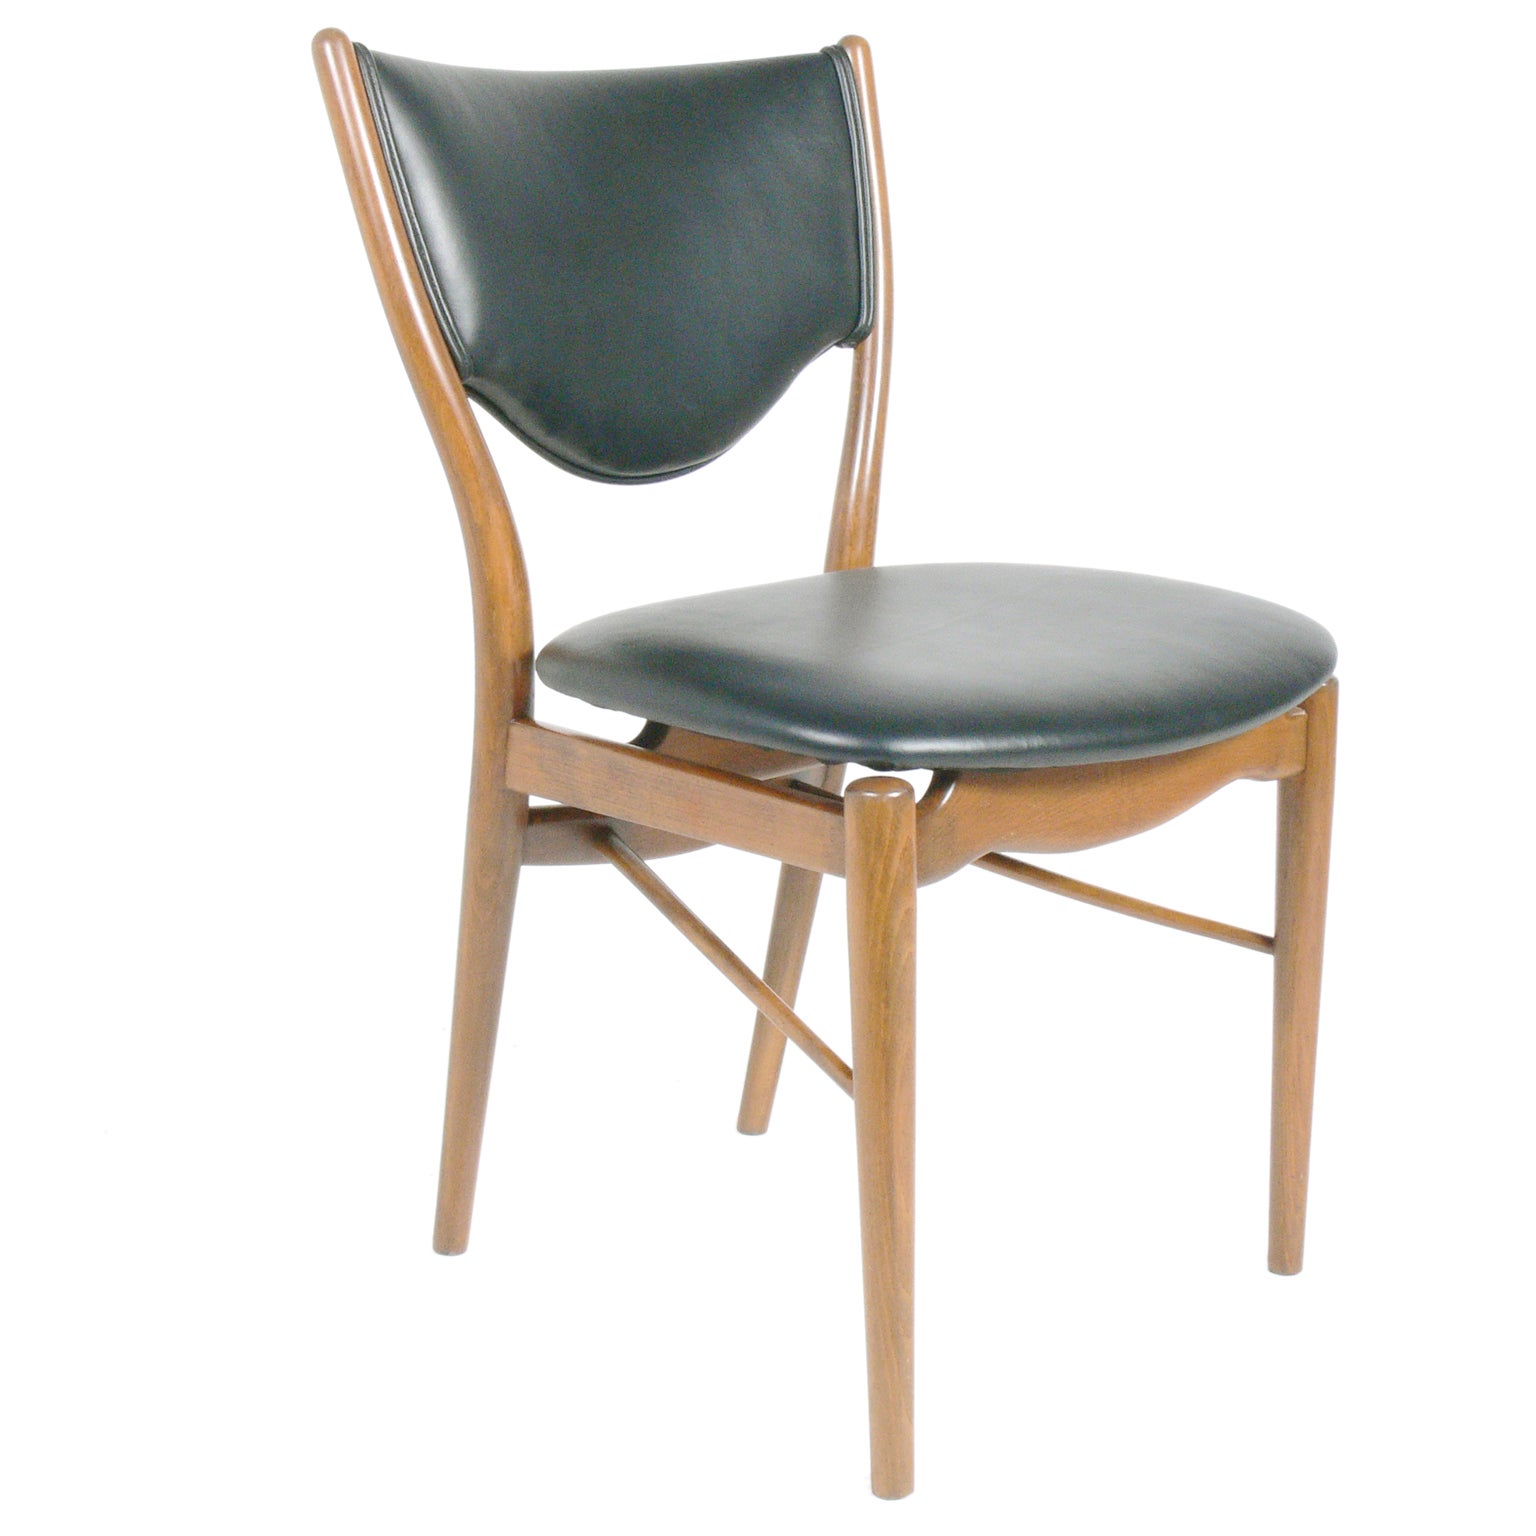 Danish Modern Desk Chair by Finn Juhl